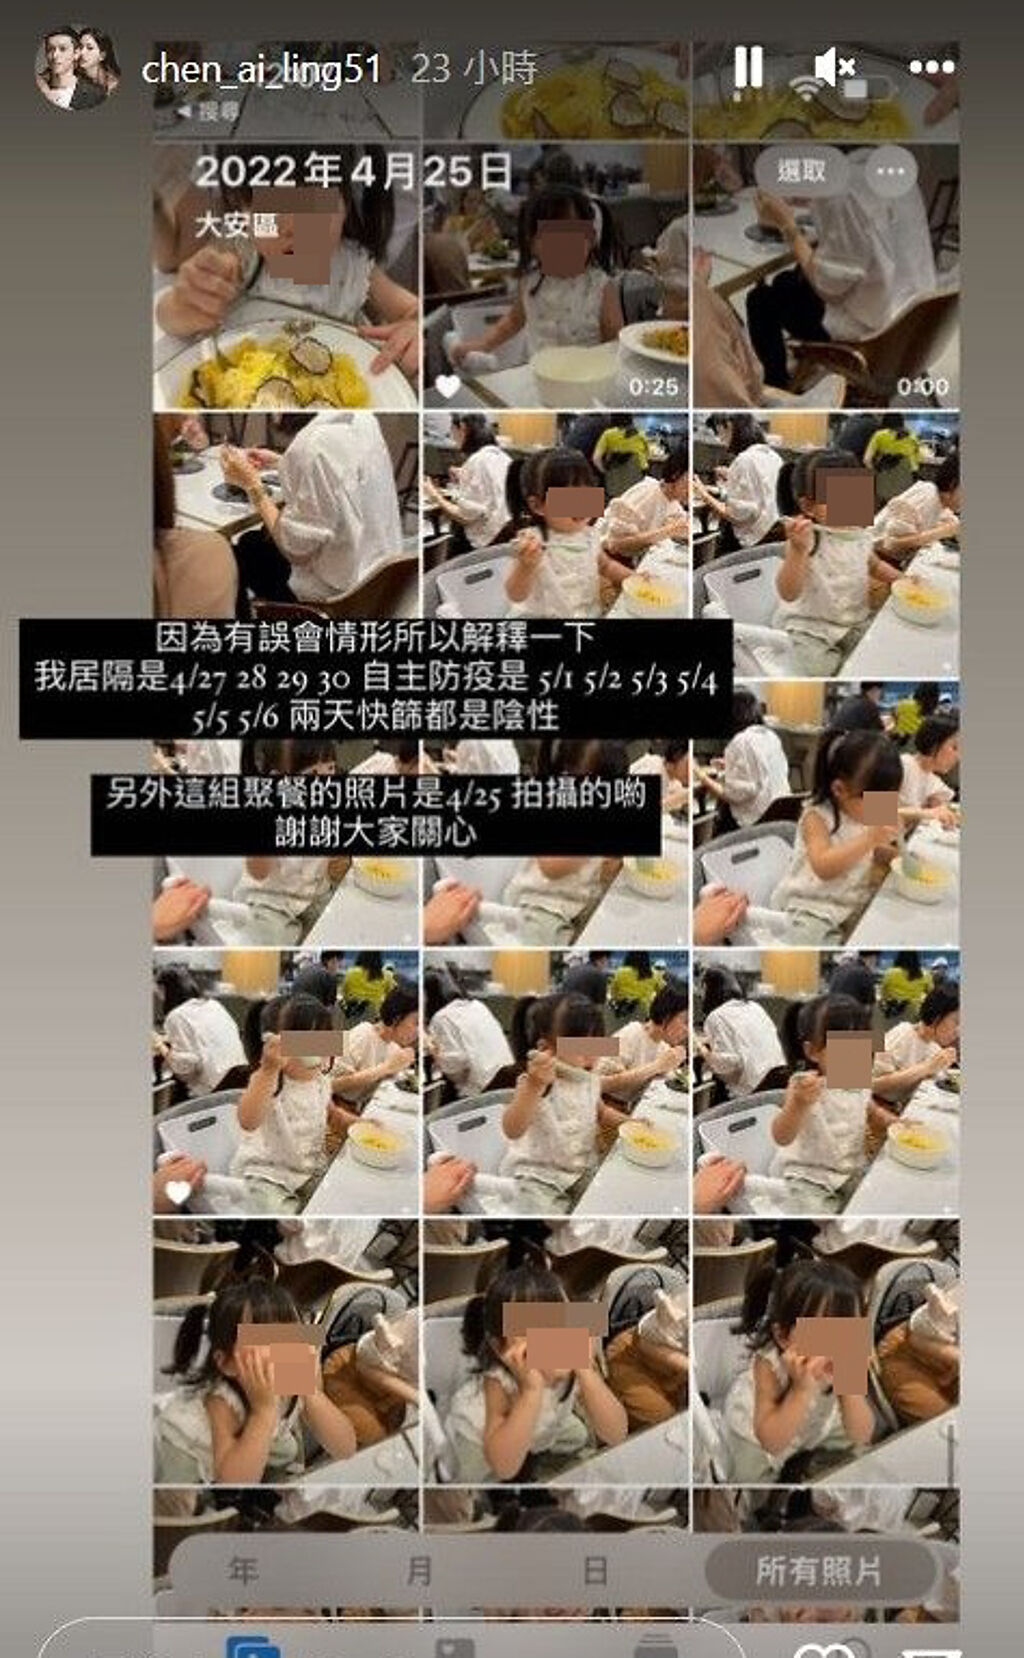 陳艾琳貼出手機相簿截圖，澄清餐廳內用照是在她居隔前拍的。(翻攝自chen_ai_ling51 IG)
 
